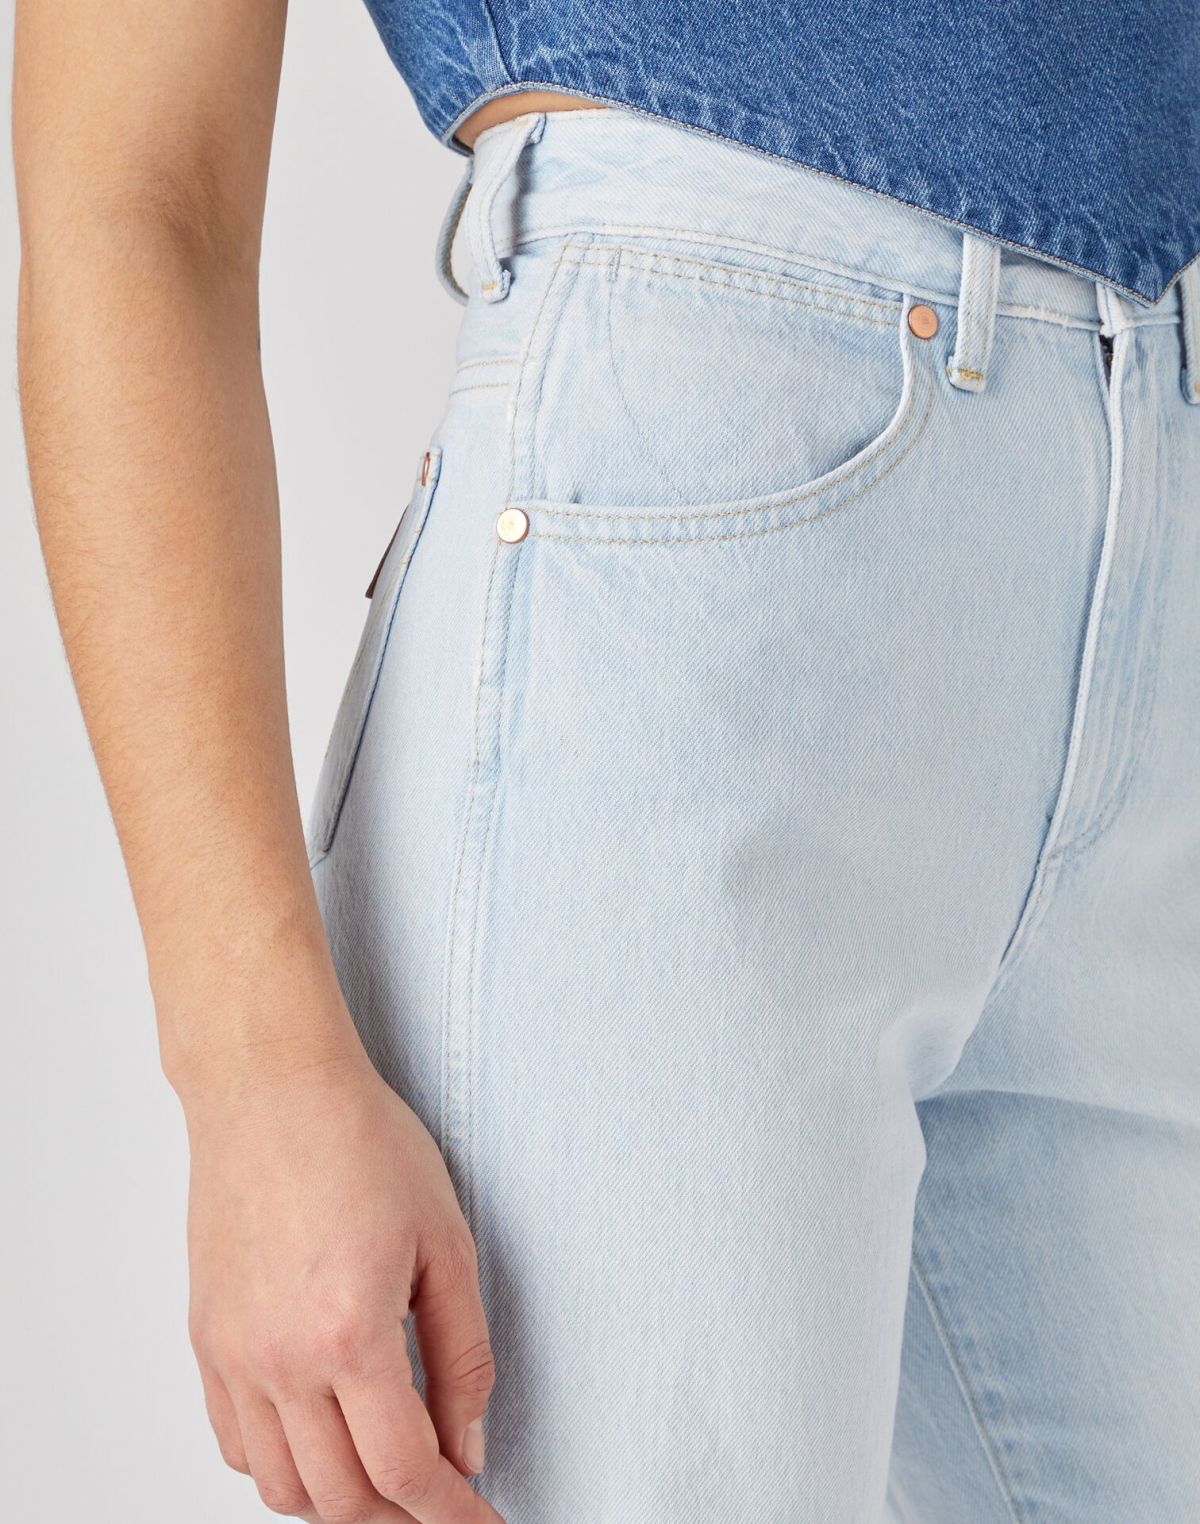  ג'ינס ארוך בגזרת MOM RELAXED של WRANGLER